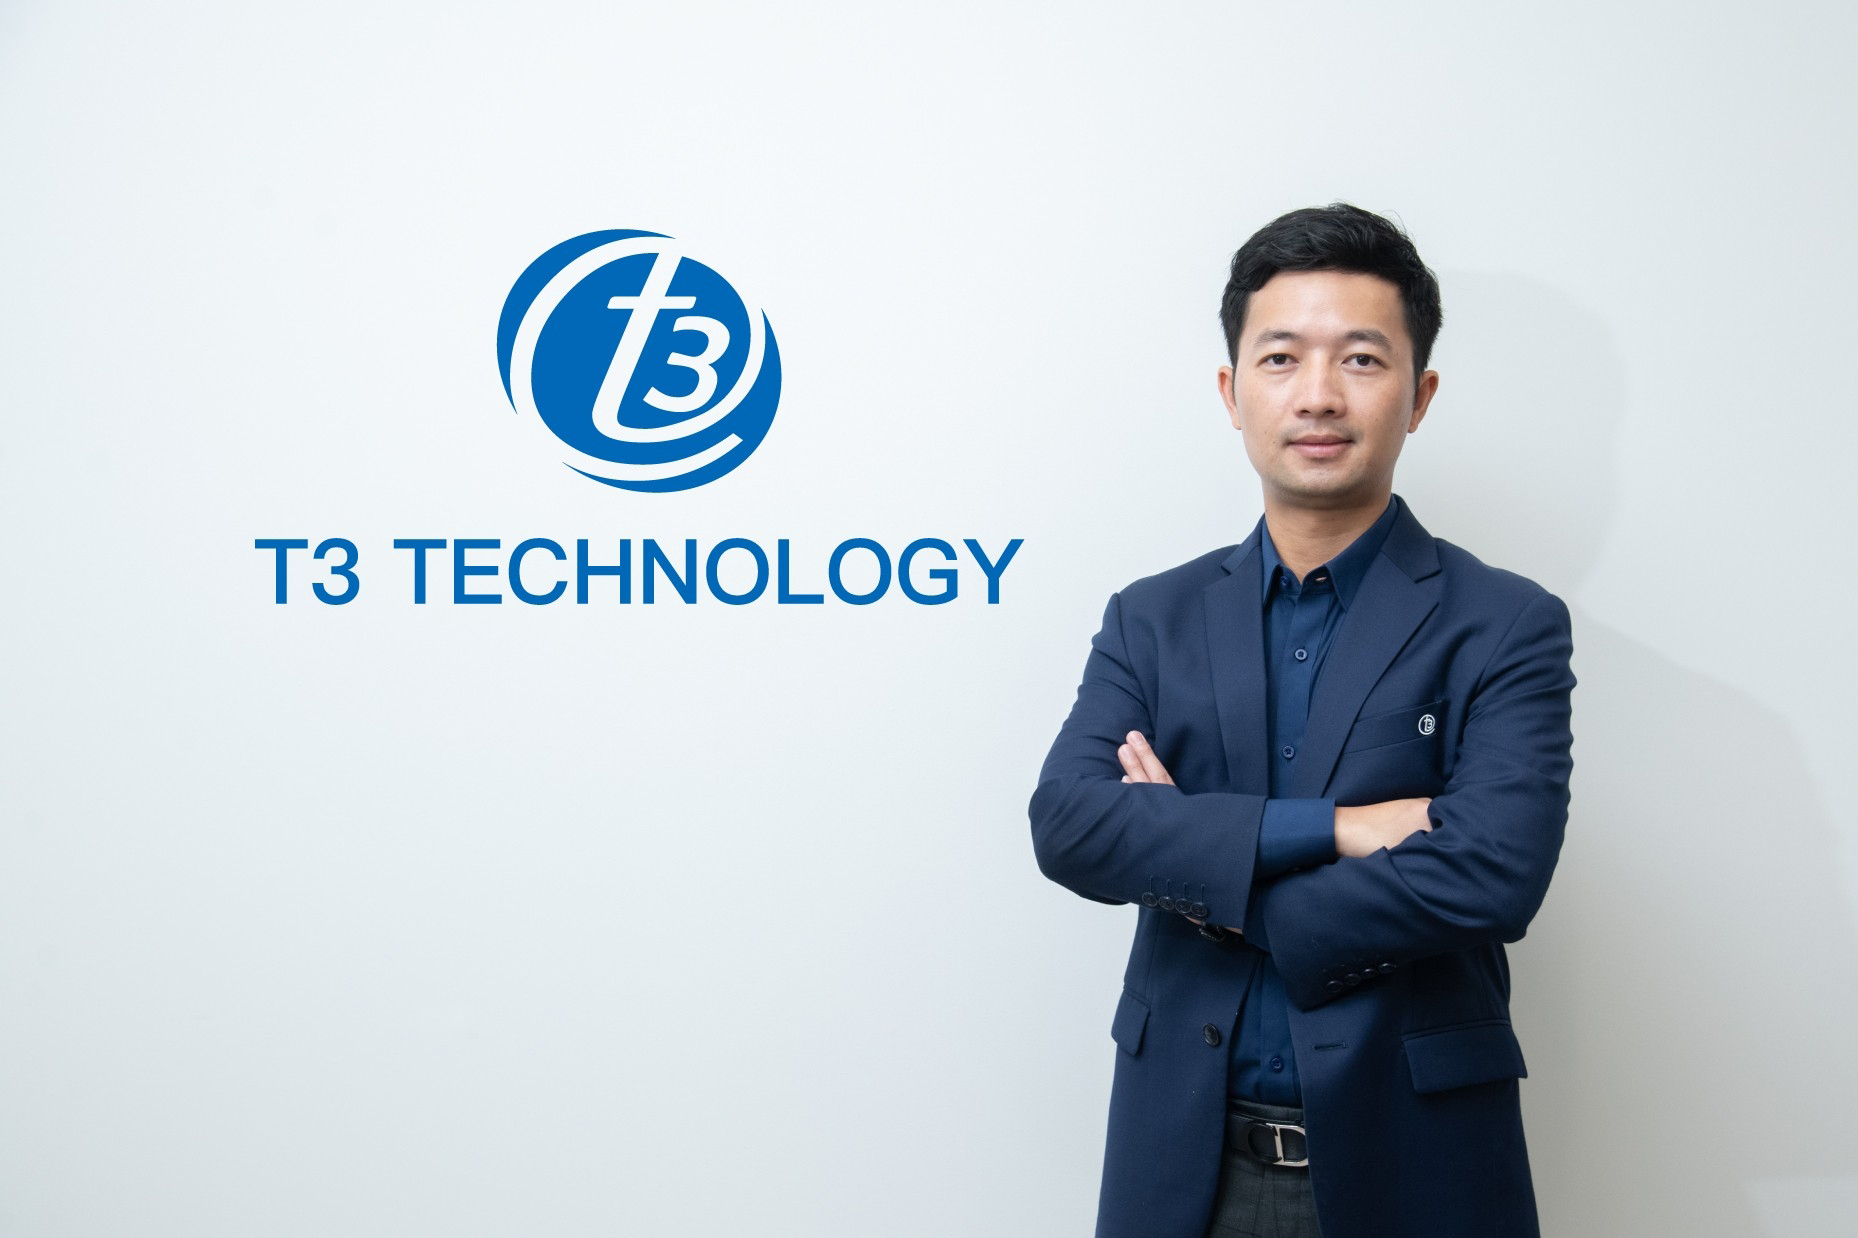 ตลาด IoT ไทยเนื้อหอม T3 Technology หงายไพ่ ตั้งเป้าขึ้นแท่นผู้นำ Smart IoT ในประเทศไทย